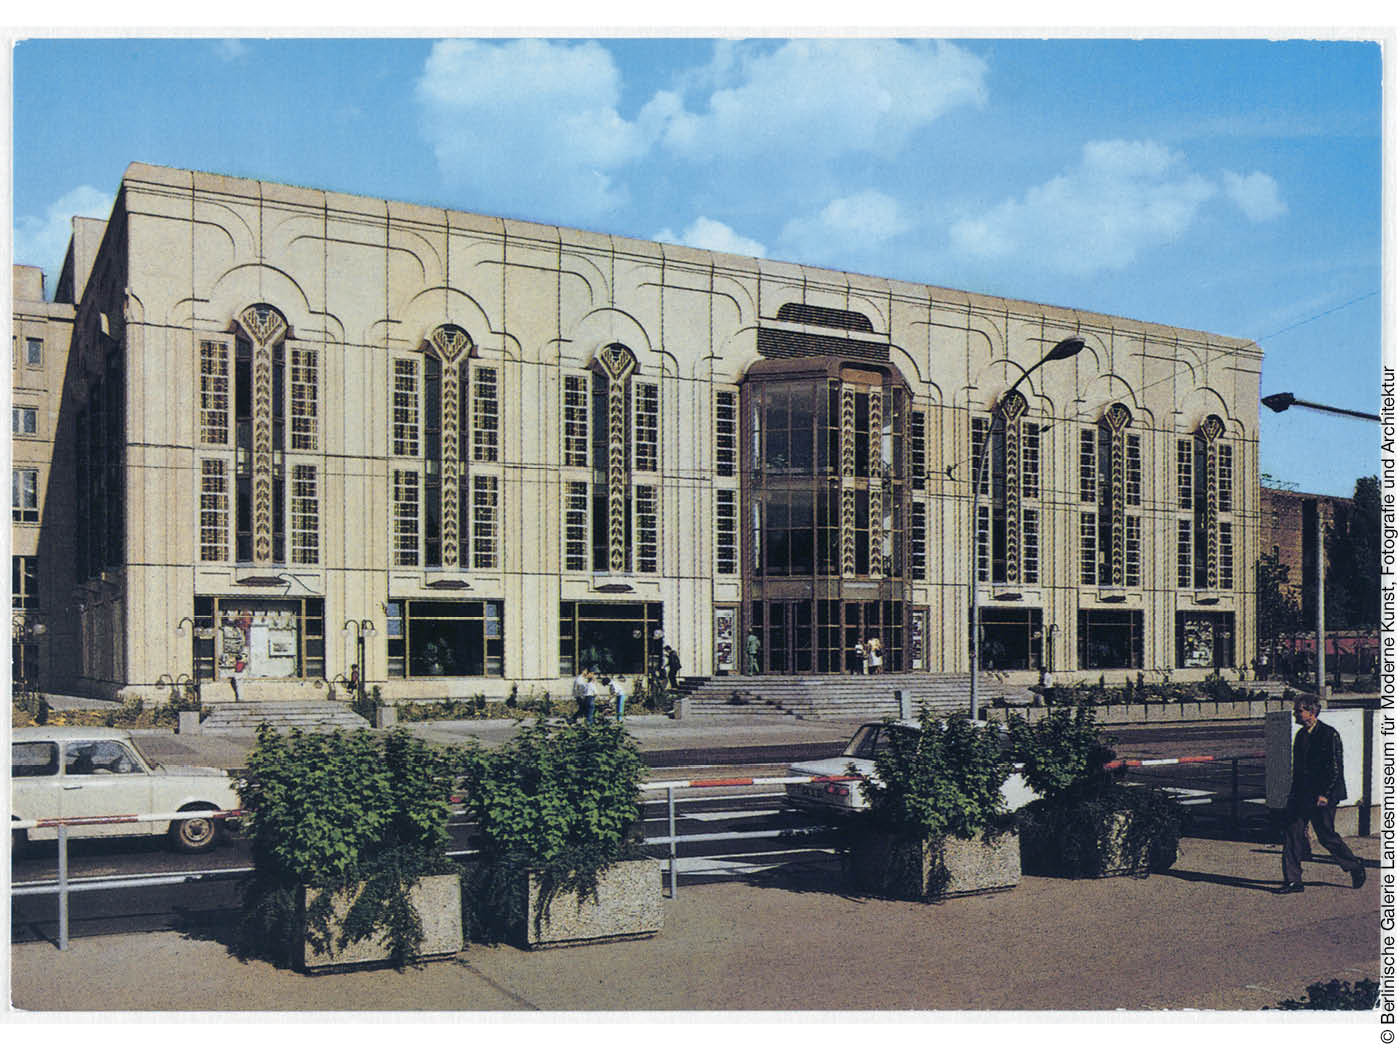 Ansichtskarte Friedrichstadtpalast Berlin 1981–1984